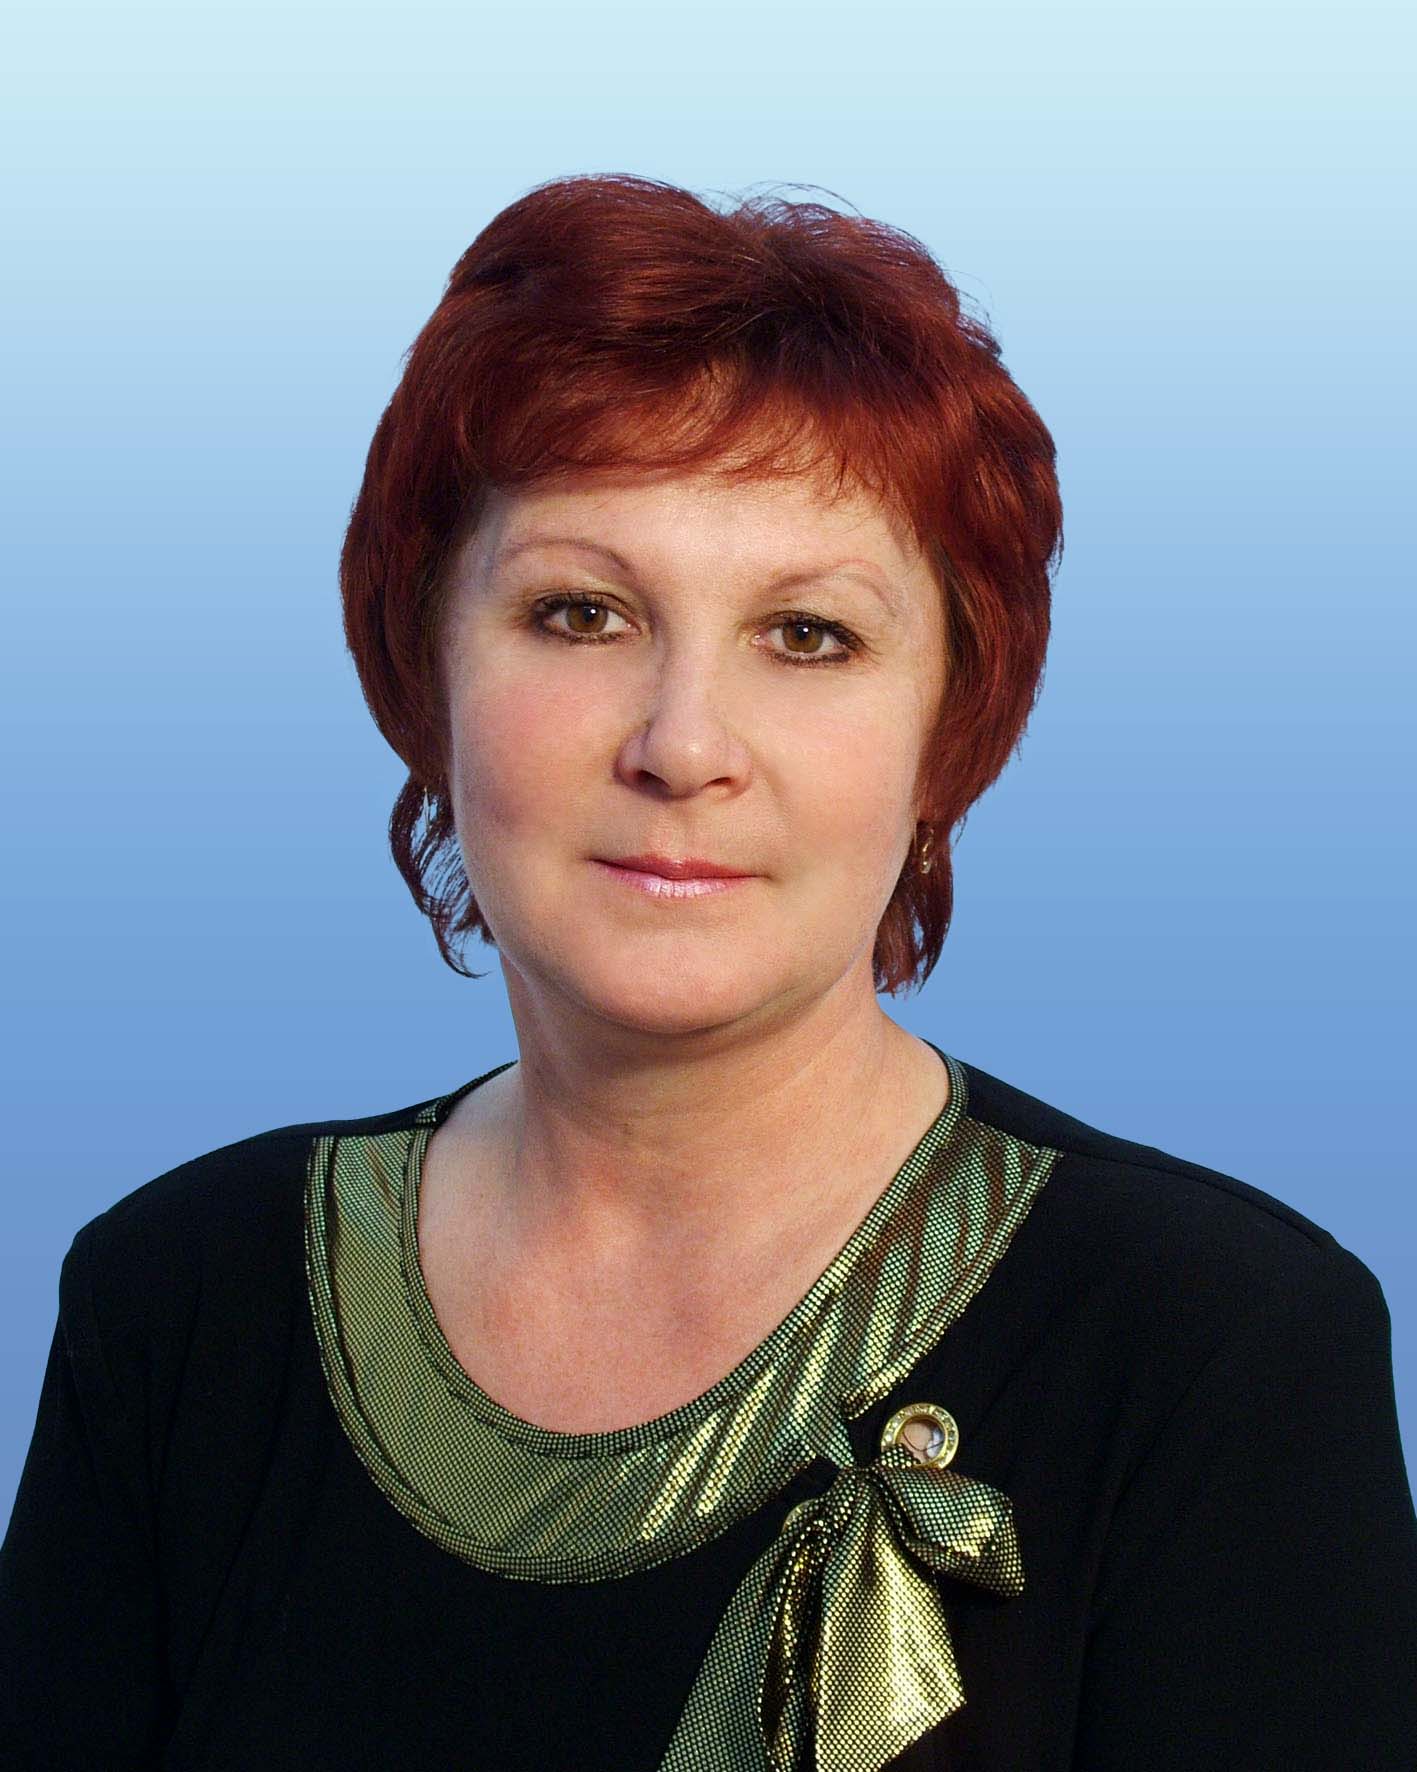 Петрова Елена Аркадьевна.